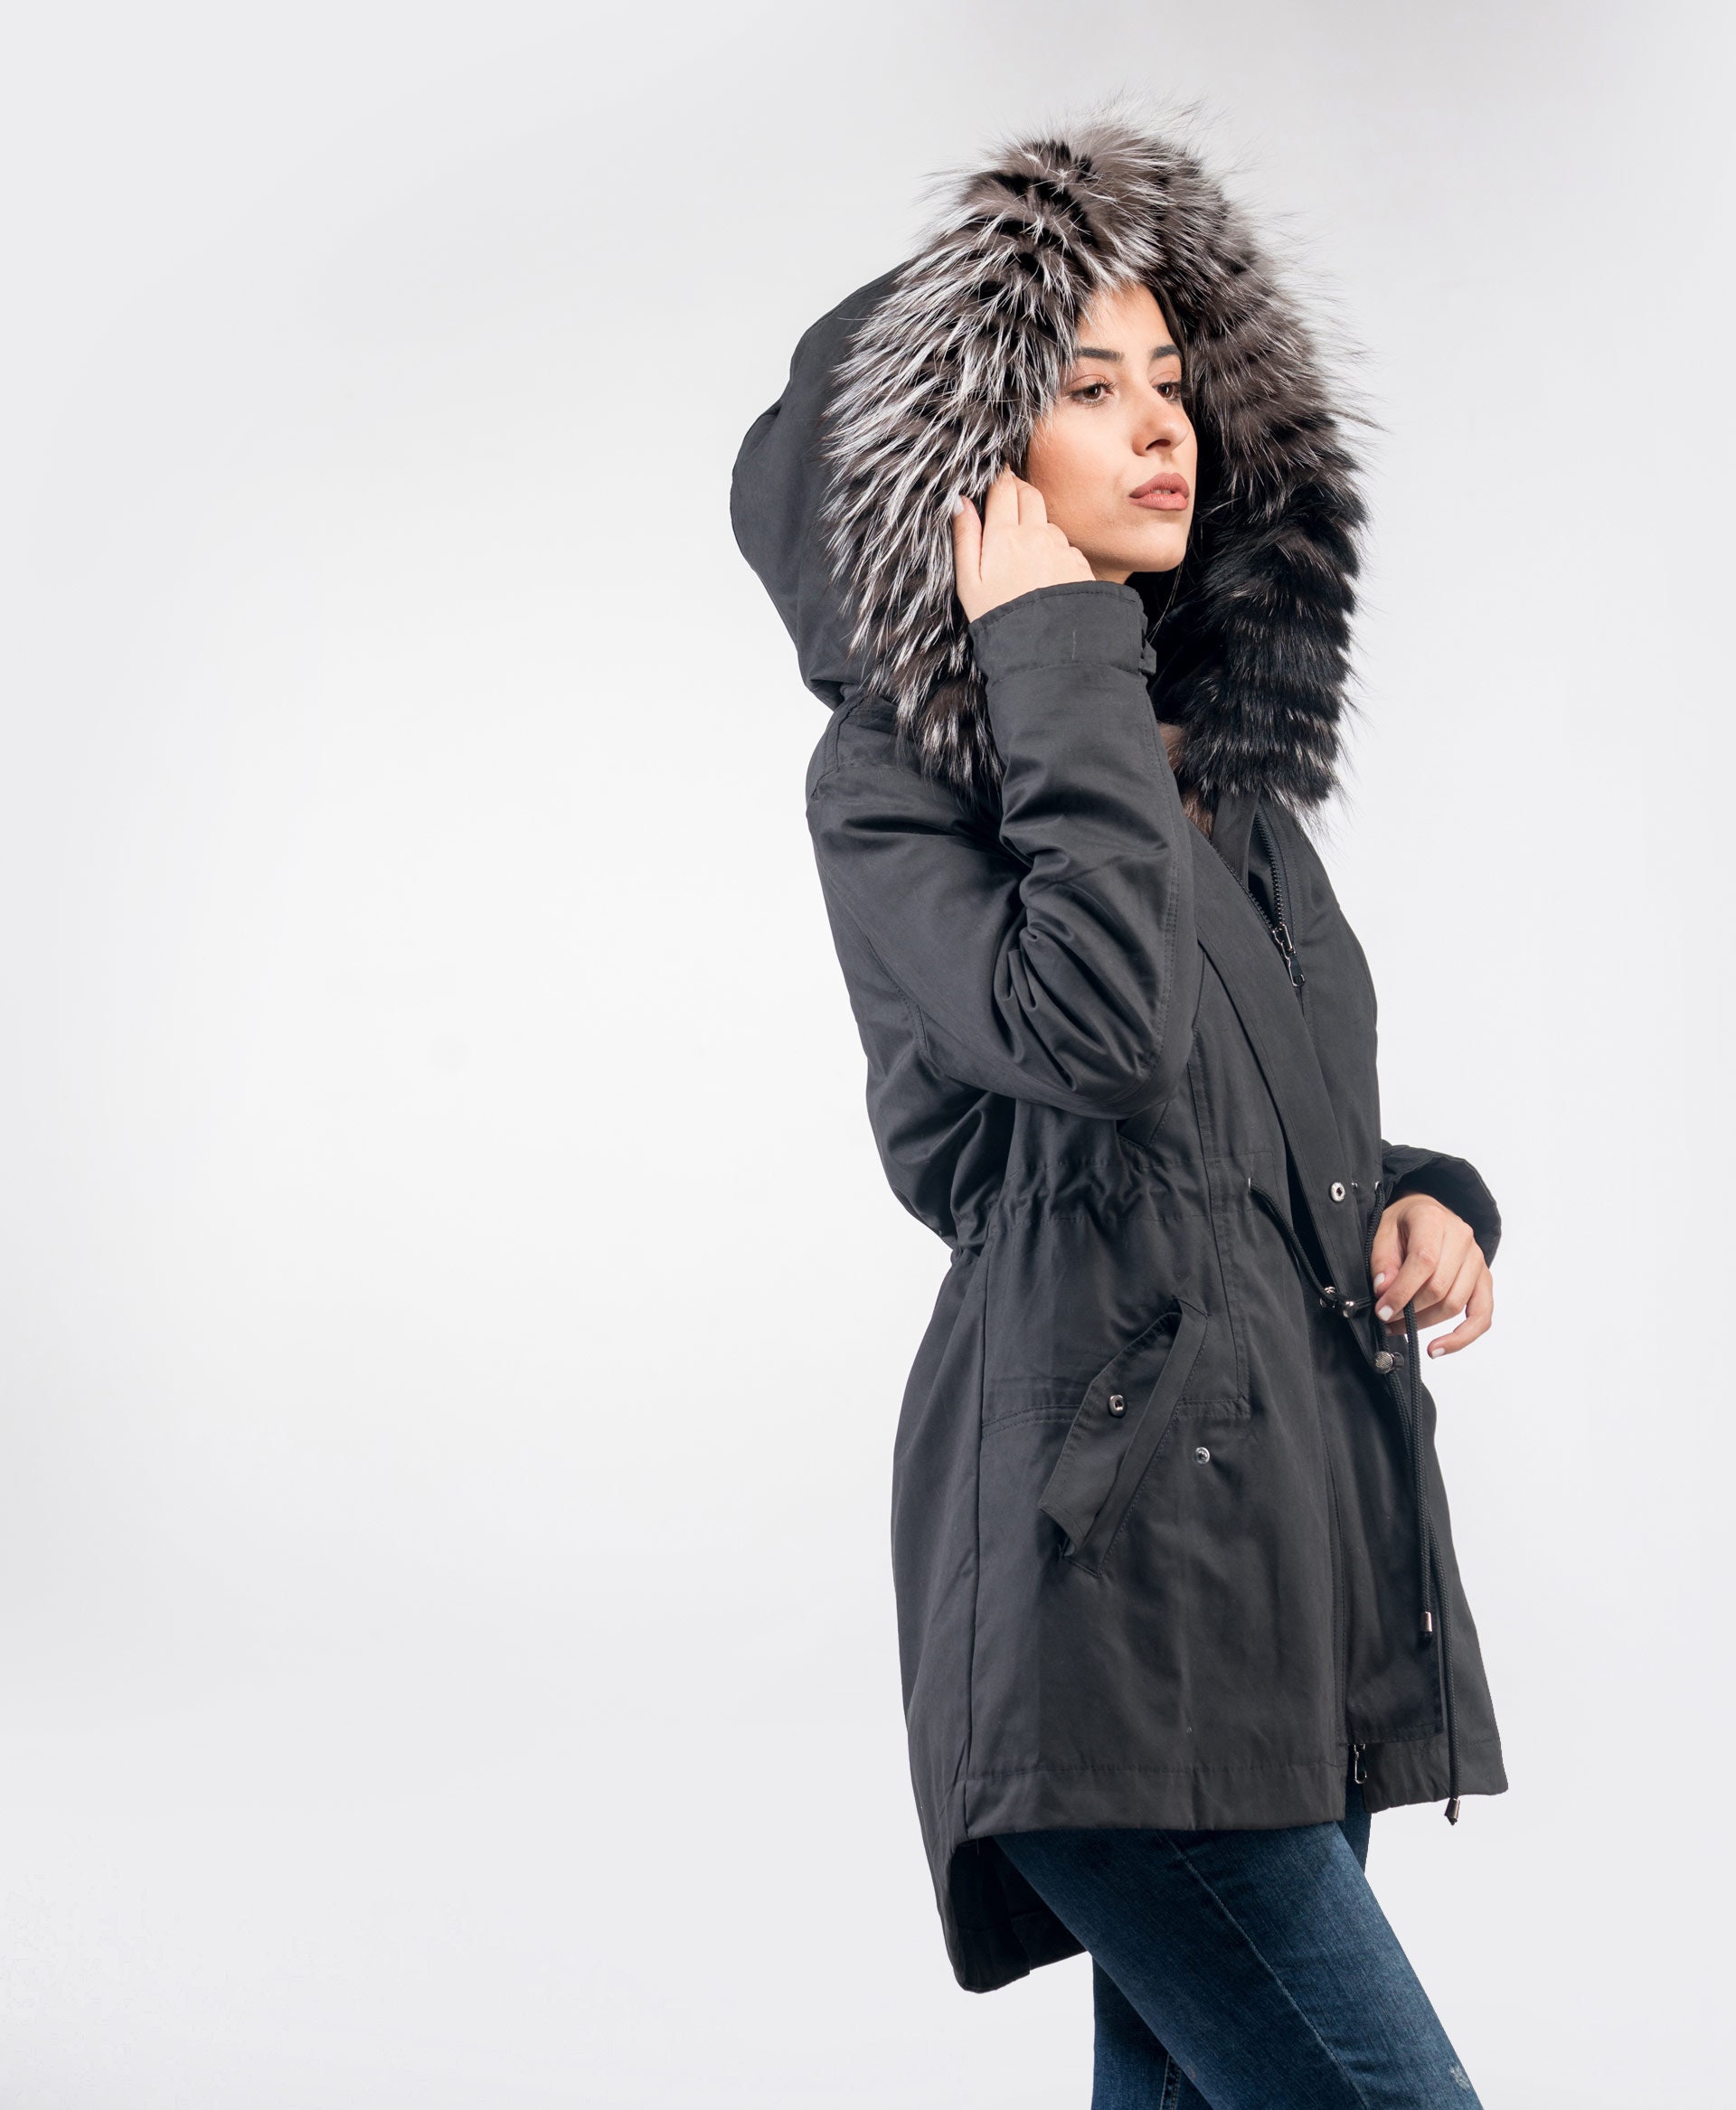 louis Vuitton black parka remobable hoodie silver fox trim men size 54/XL  (F2)